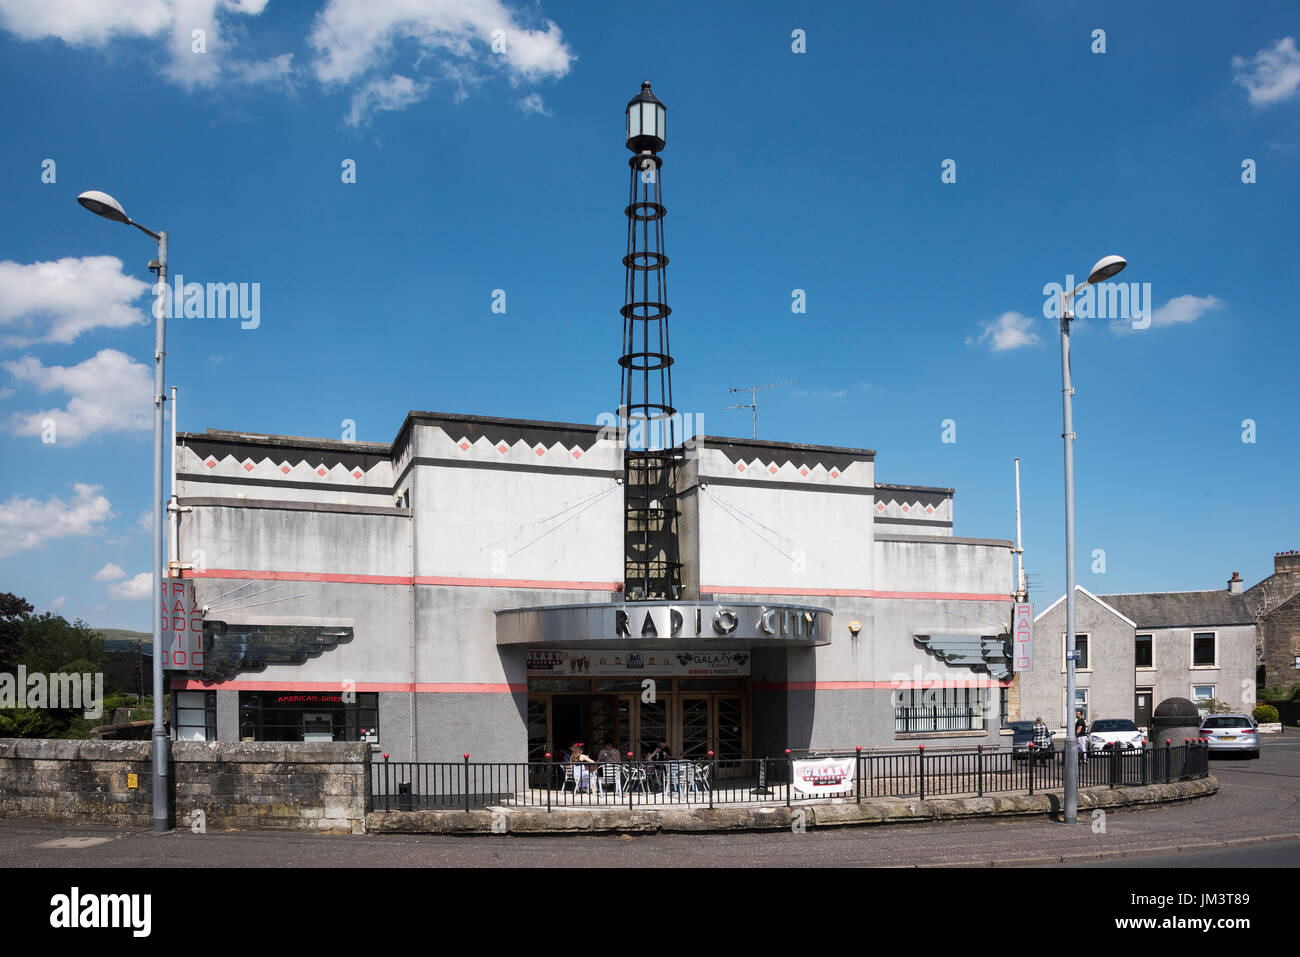 Radio City Bâtiment art déco dans le centre de la petite ville d'Ayrshire Kilbirnie en Ecosse. Banque D'Images